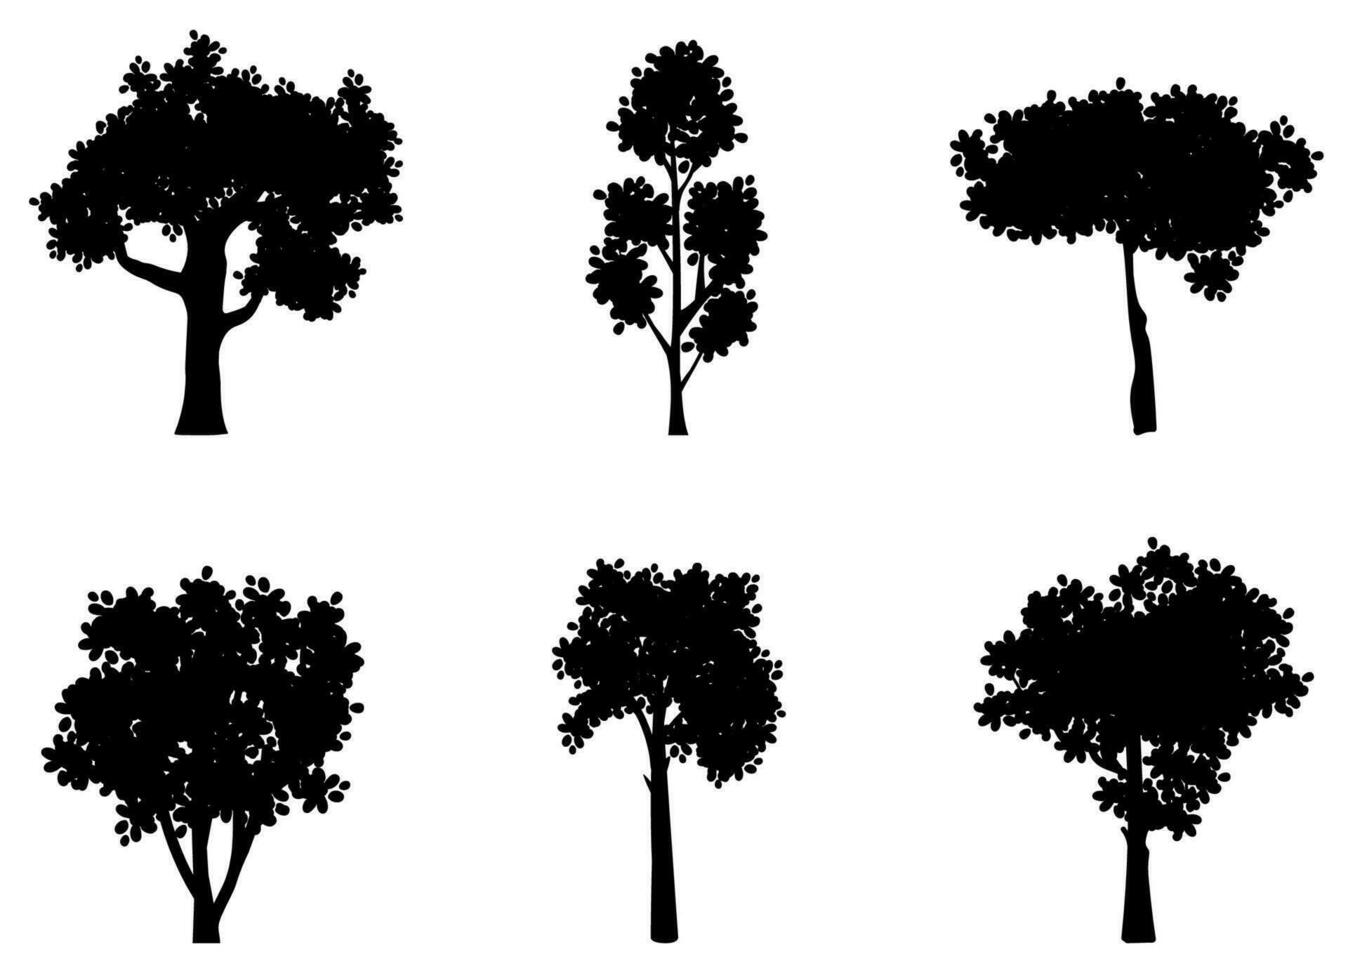 reeks van verschillend boom silhouetten. vector illustraties voor landschappen of bloemen ontwerpen.